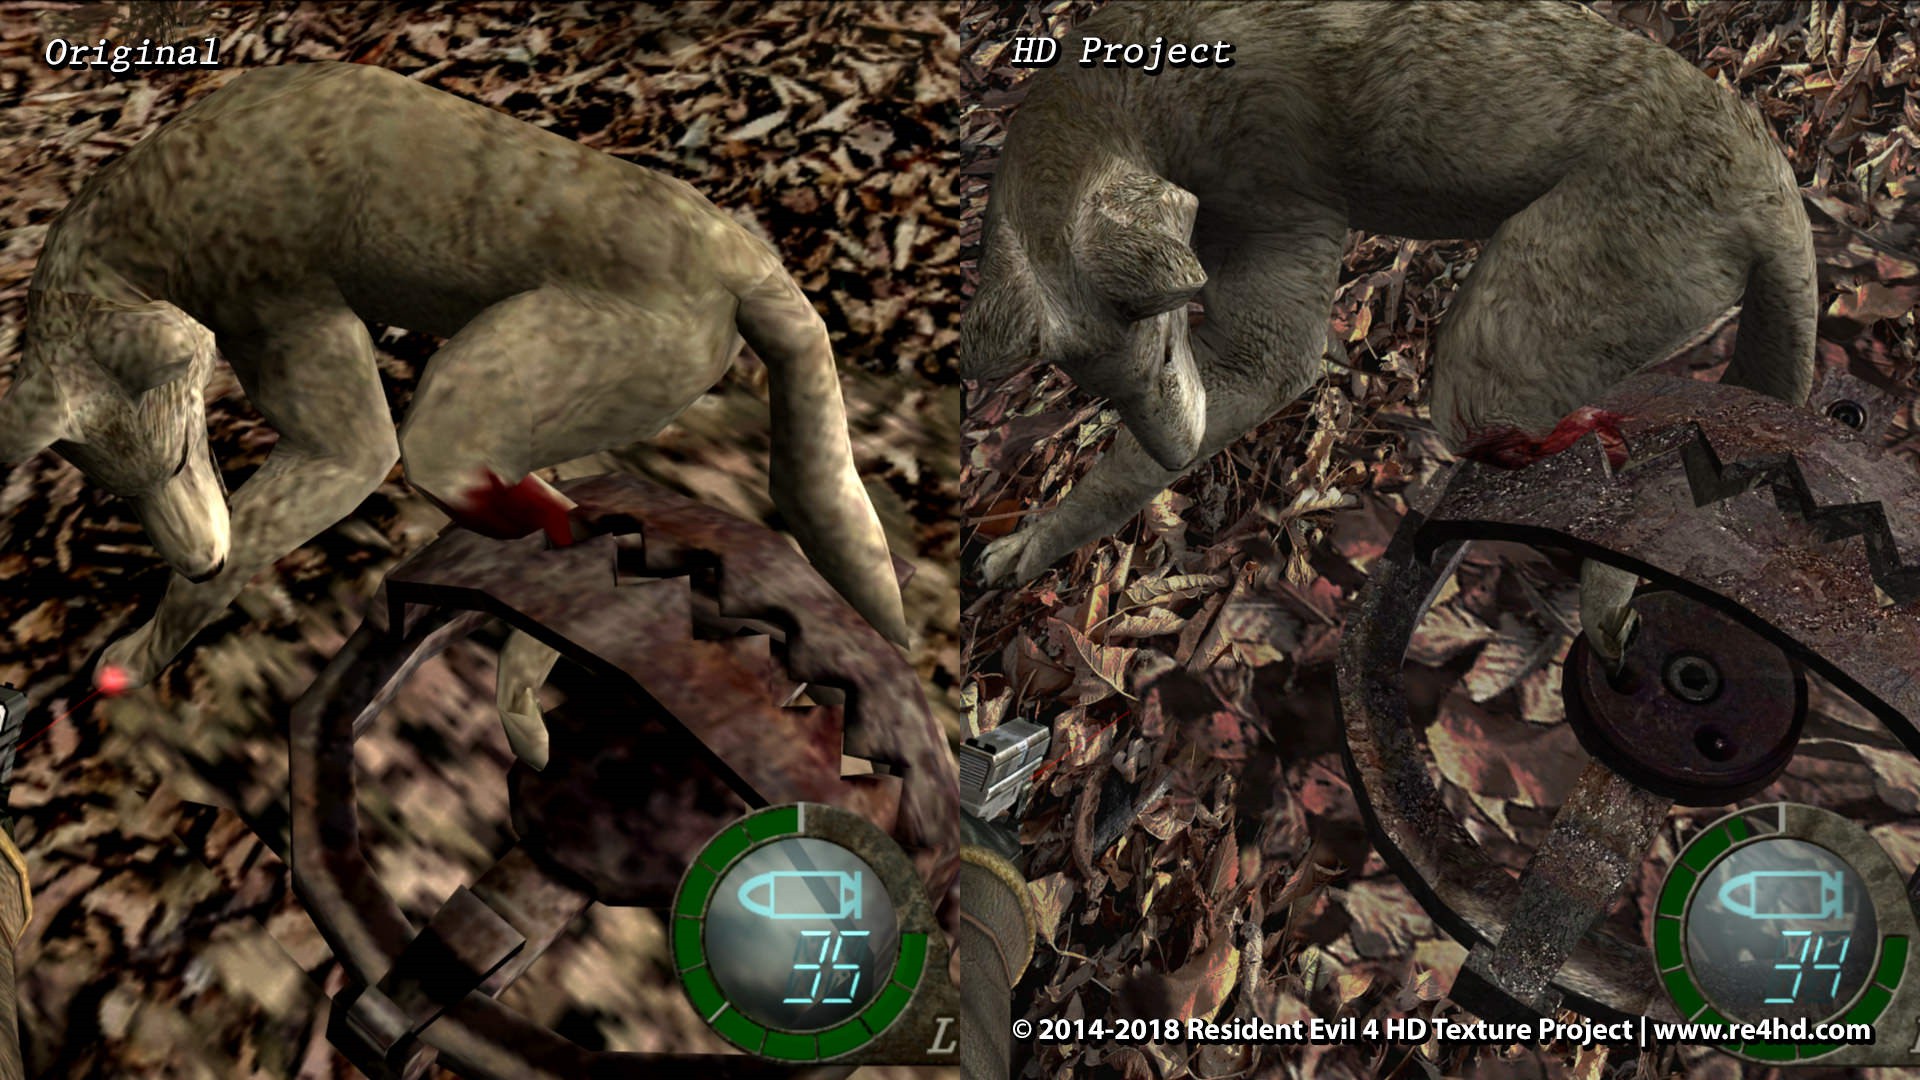 《生化危机4》HD版新对比截图 人物和动物更加逼真